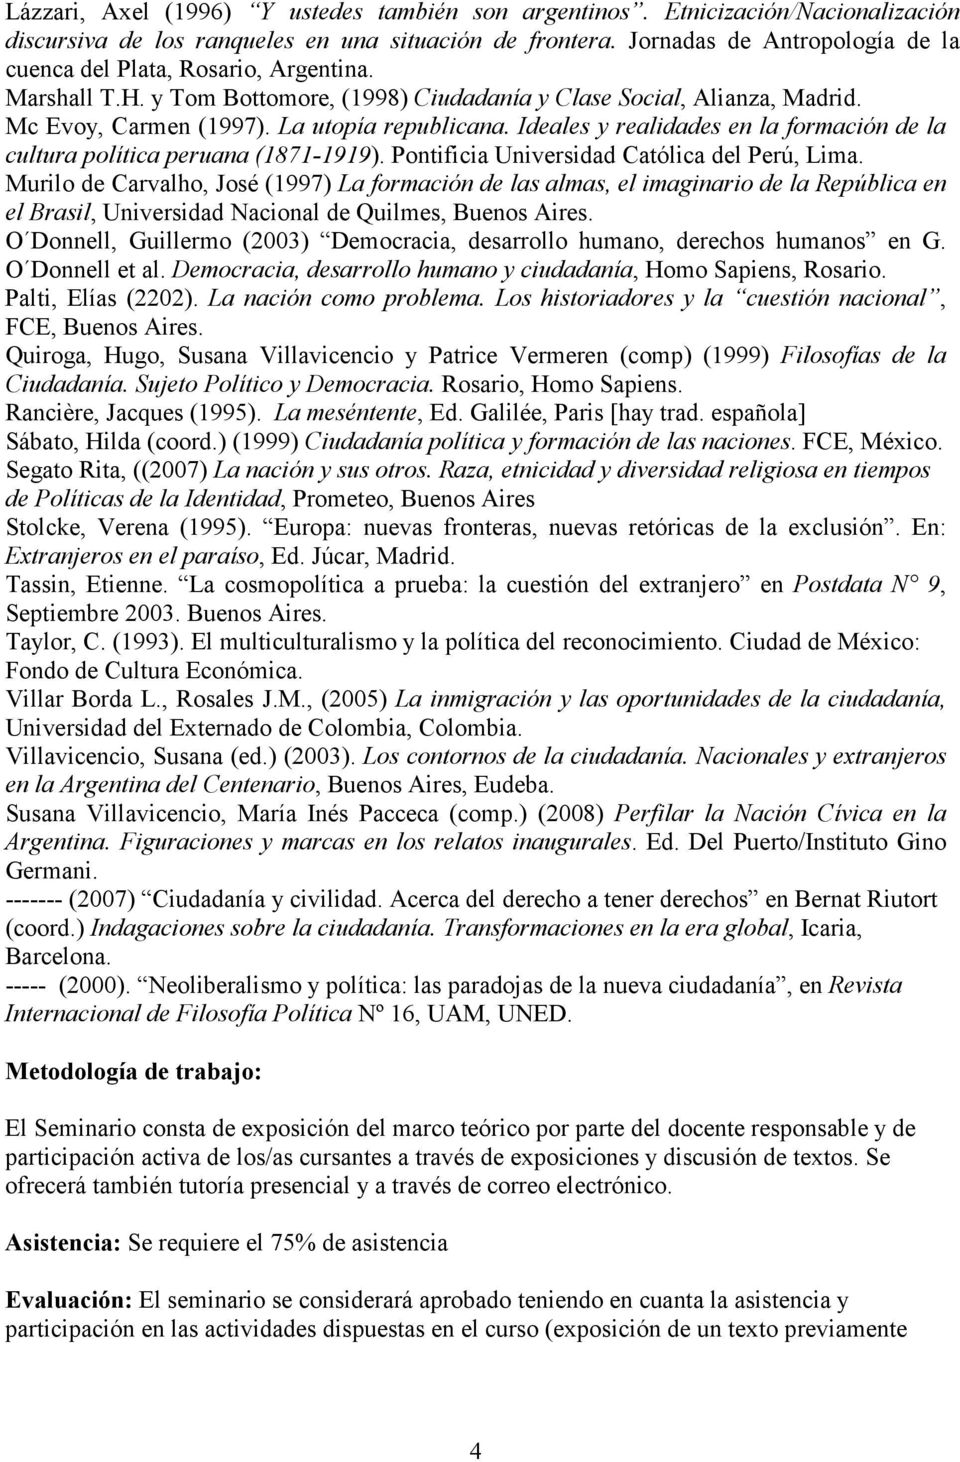 Ideales y realidades en la formación de la cultura política peruana (1871-1919). Pontificia Universidad Católica del Perú, Lima.